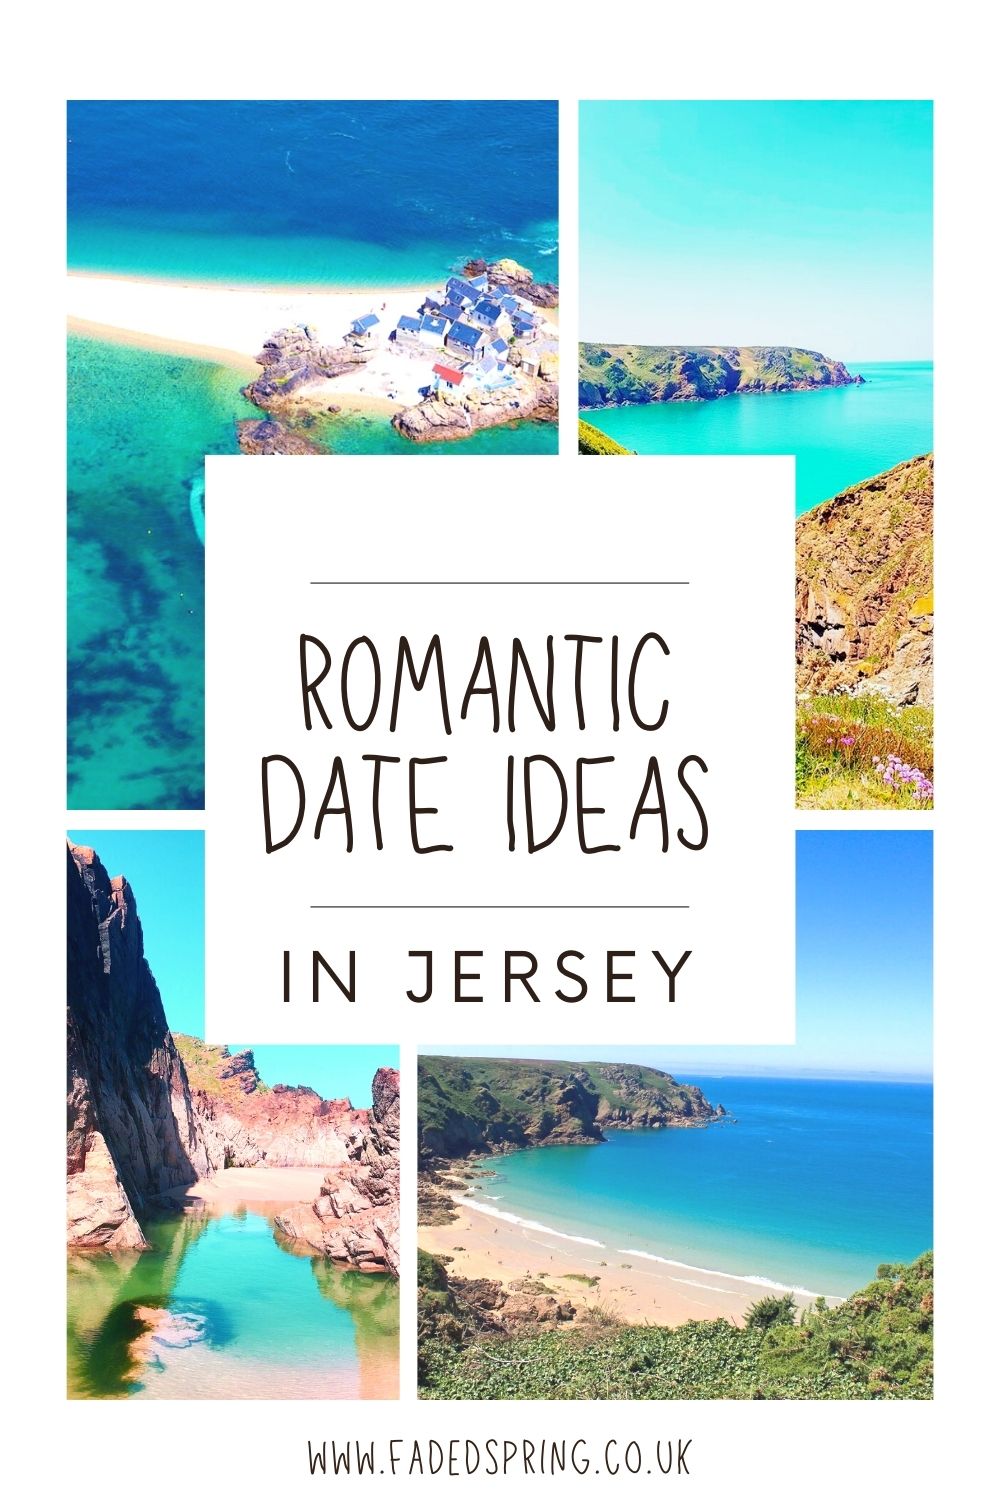 <img src="romantic.jpg" alt="romantic date ideas in Jersey Islands"/> 